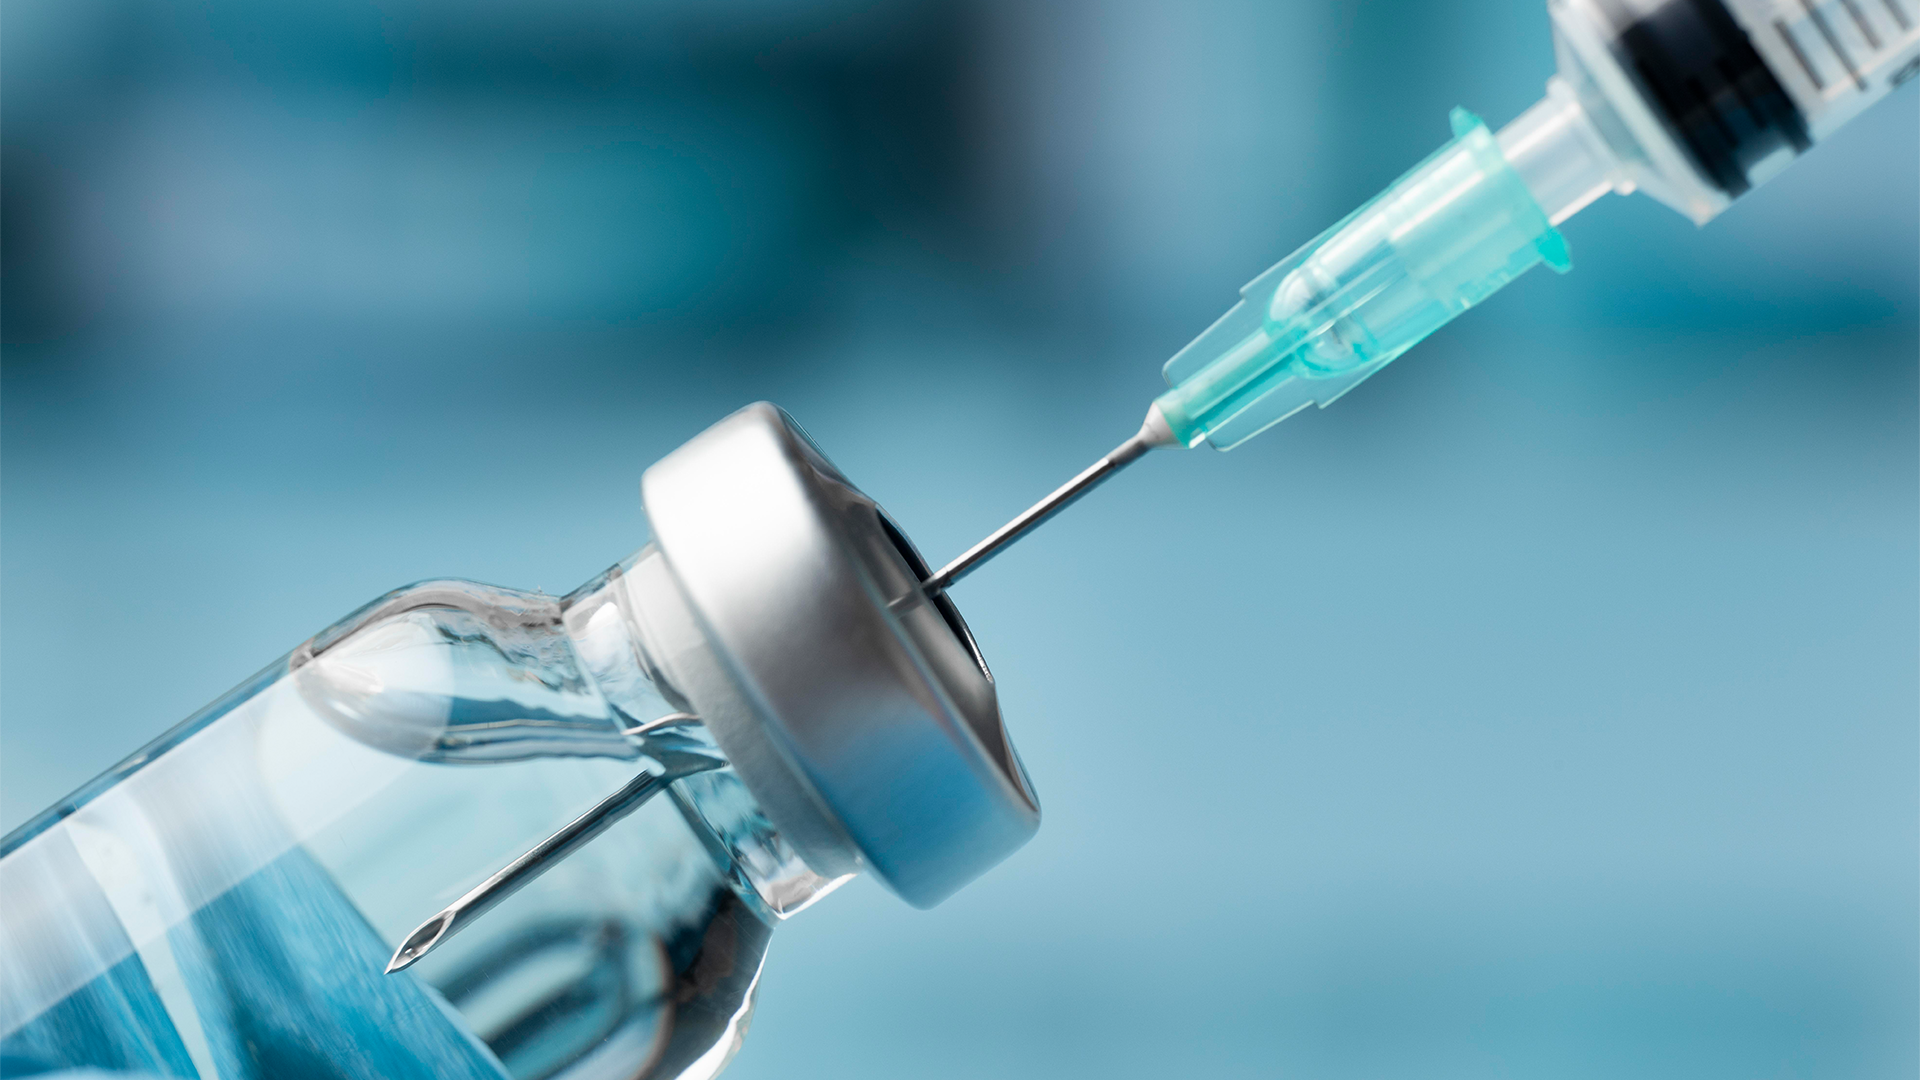 Bomba de Insulina e a limitação de cobertura pelo plano de saúde